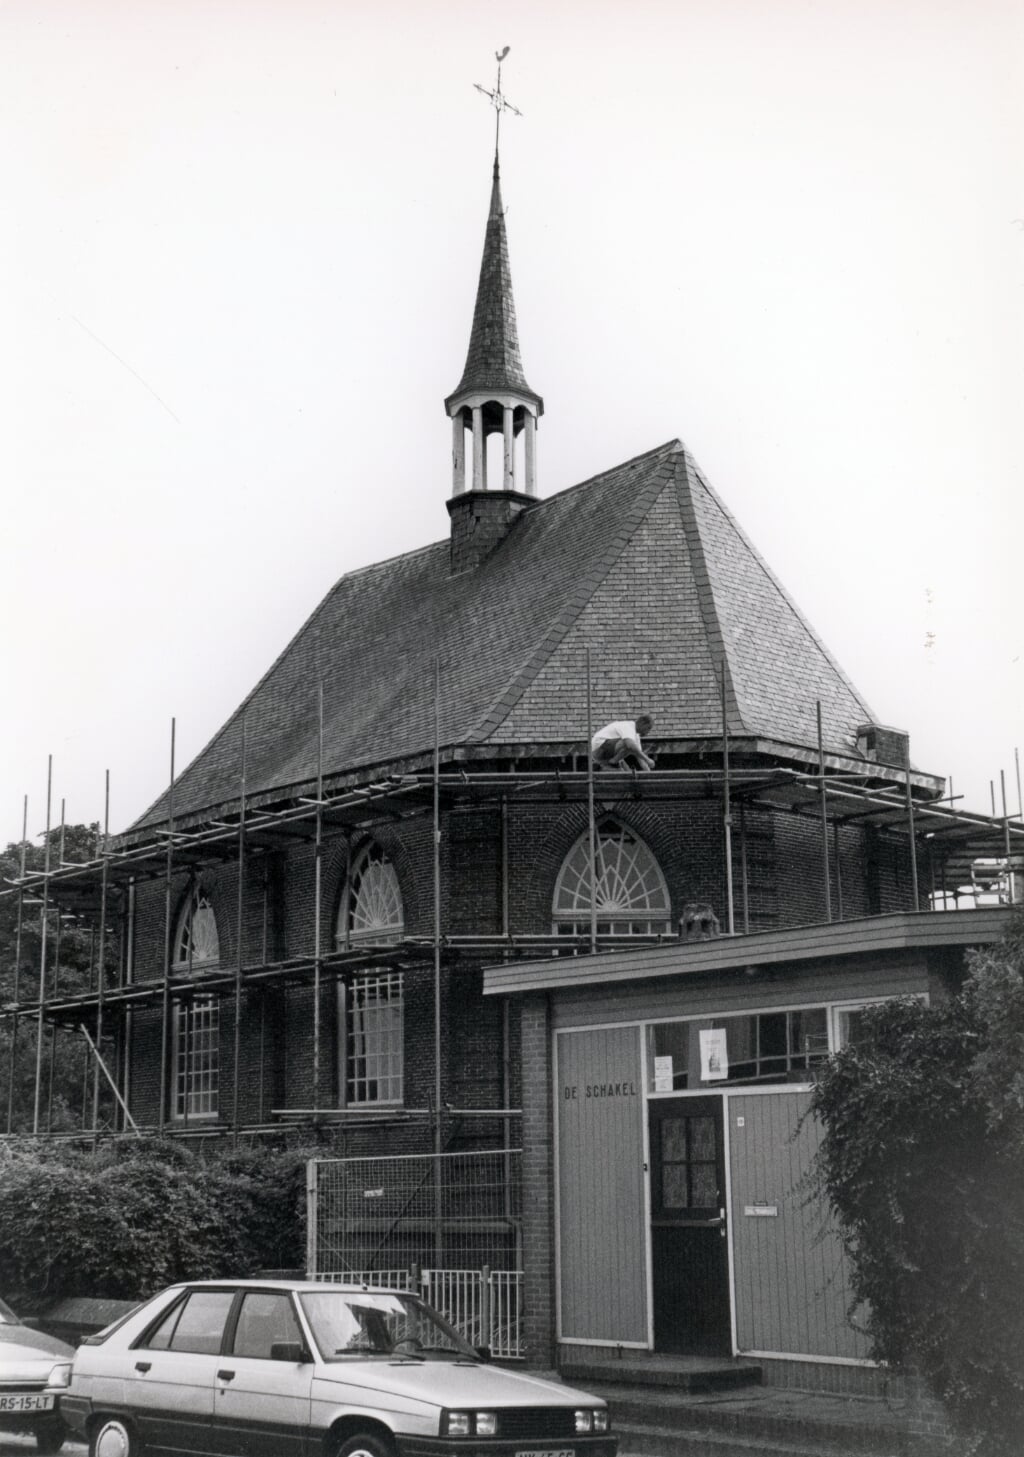 Augustus 1995: protestantse kerk in de steigers. Rechts De Schakel. Dit ontmoetingscentrum werd in 2006 afgebroken om plaats te maken voor nieuwbouw.